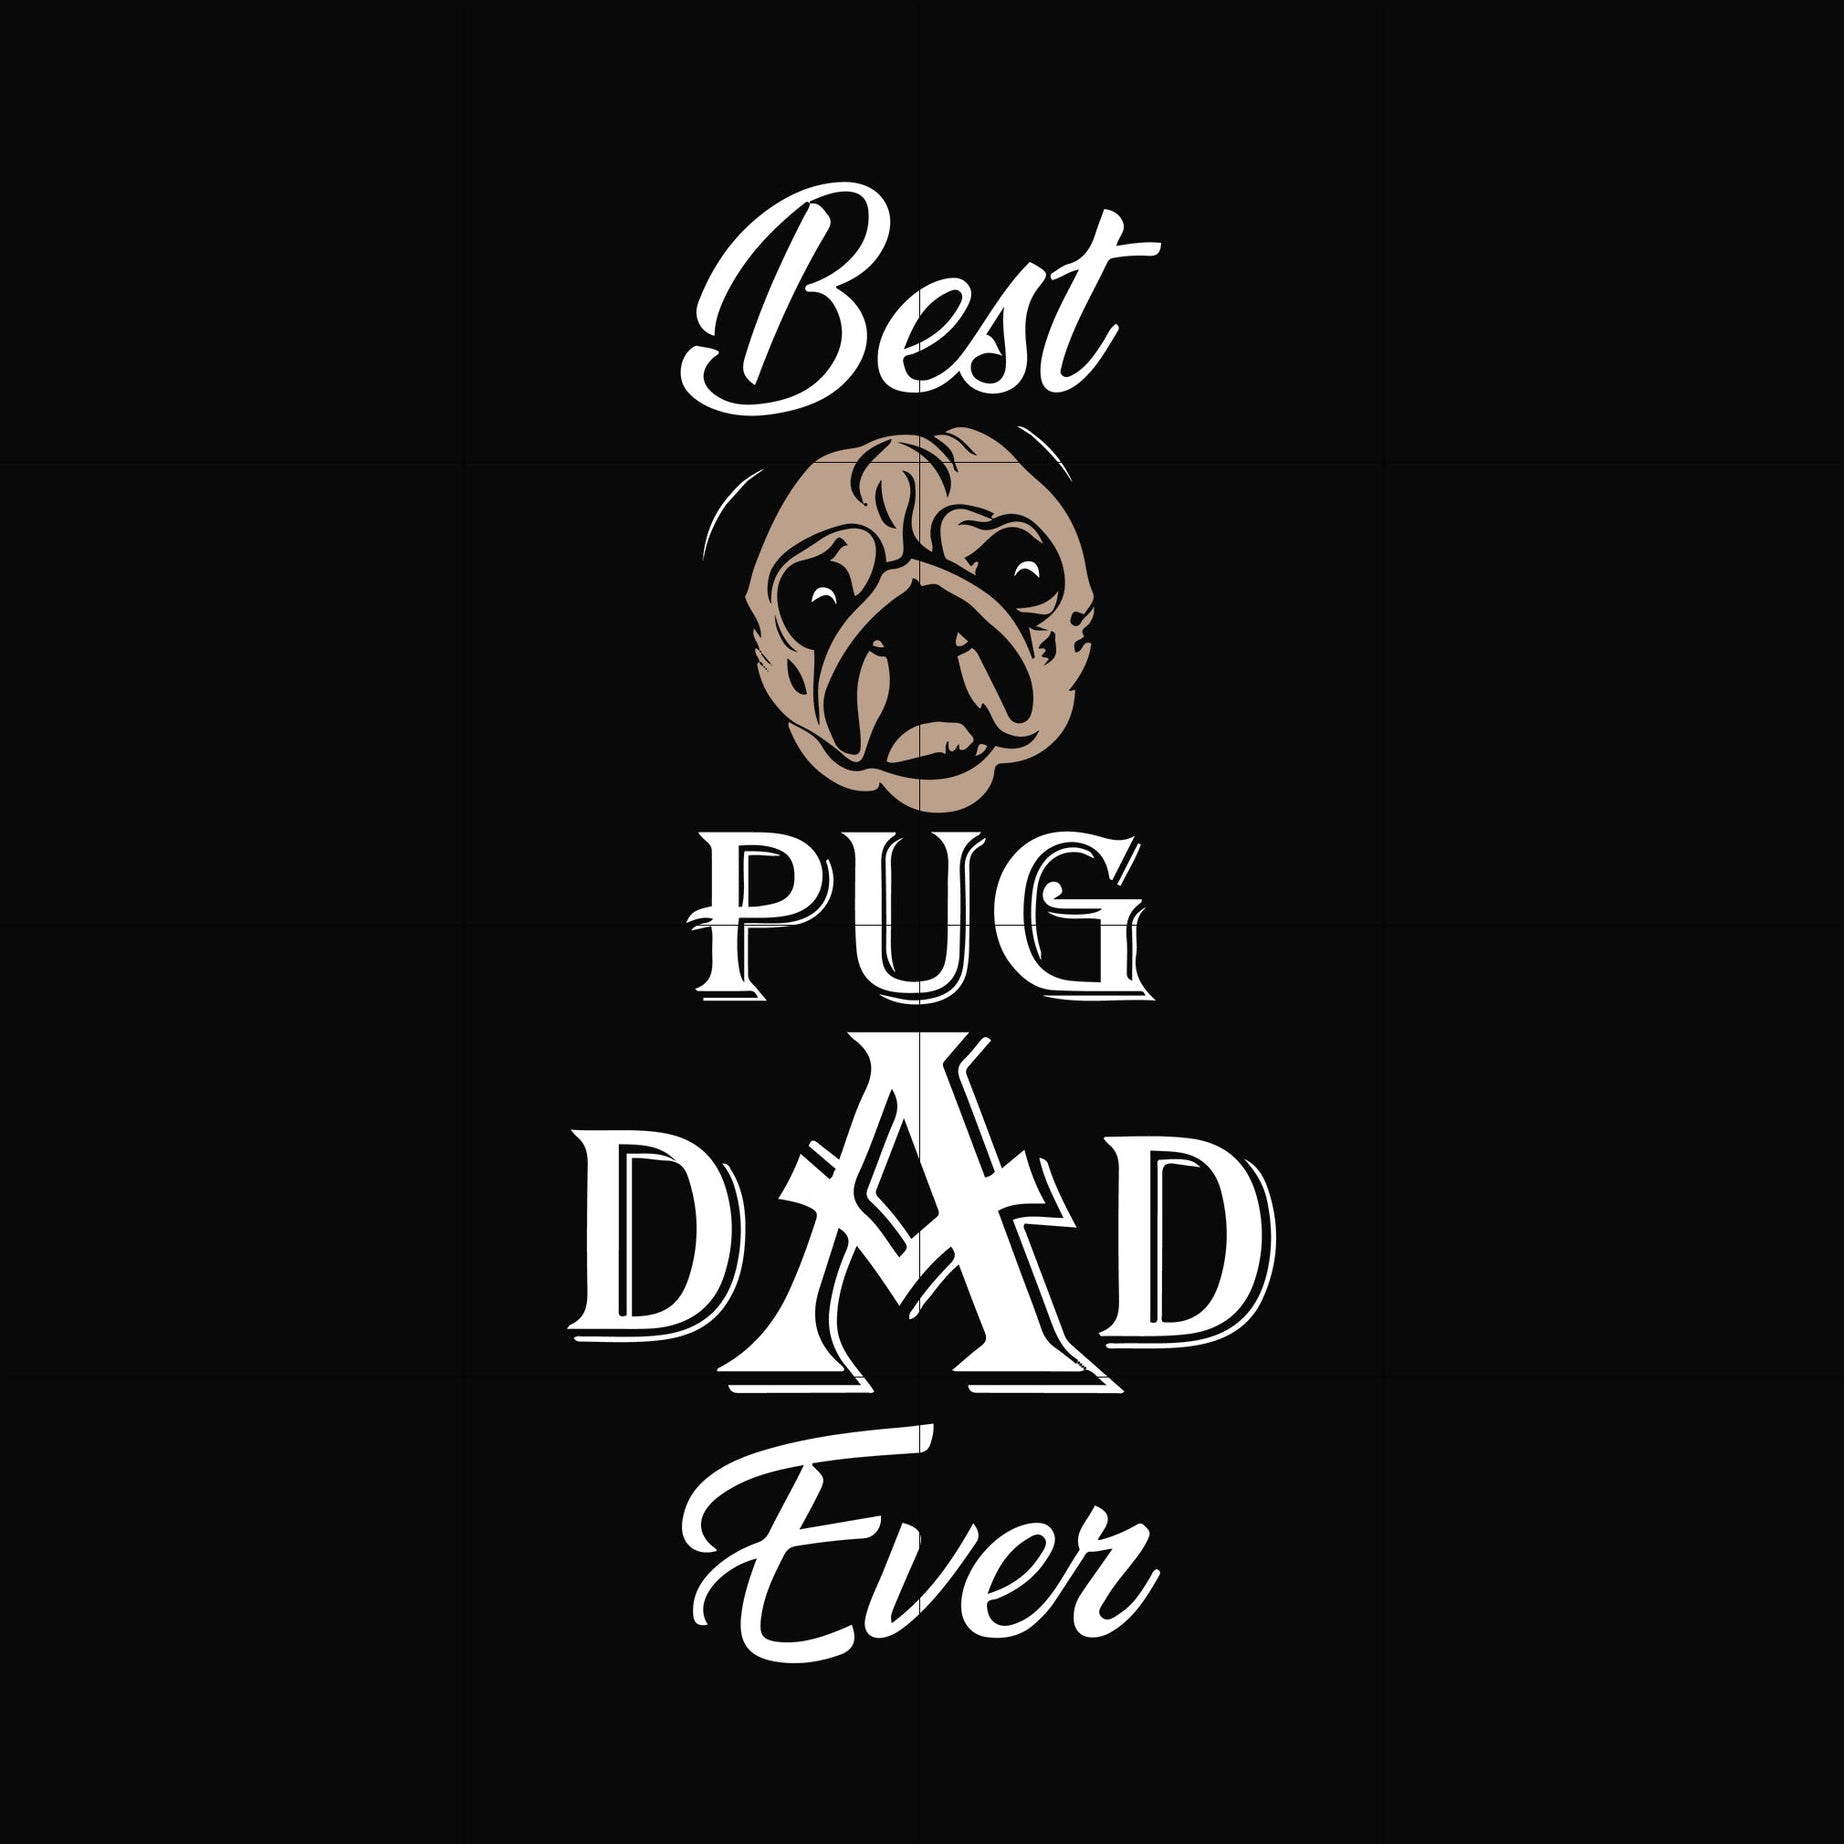 Best pug dad ever svg, png, dxf, eps, digital file FTD127